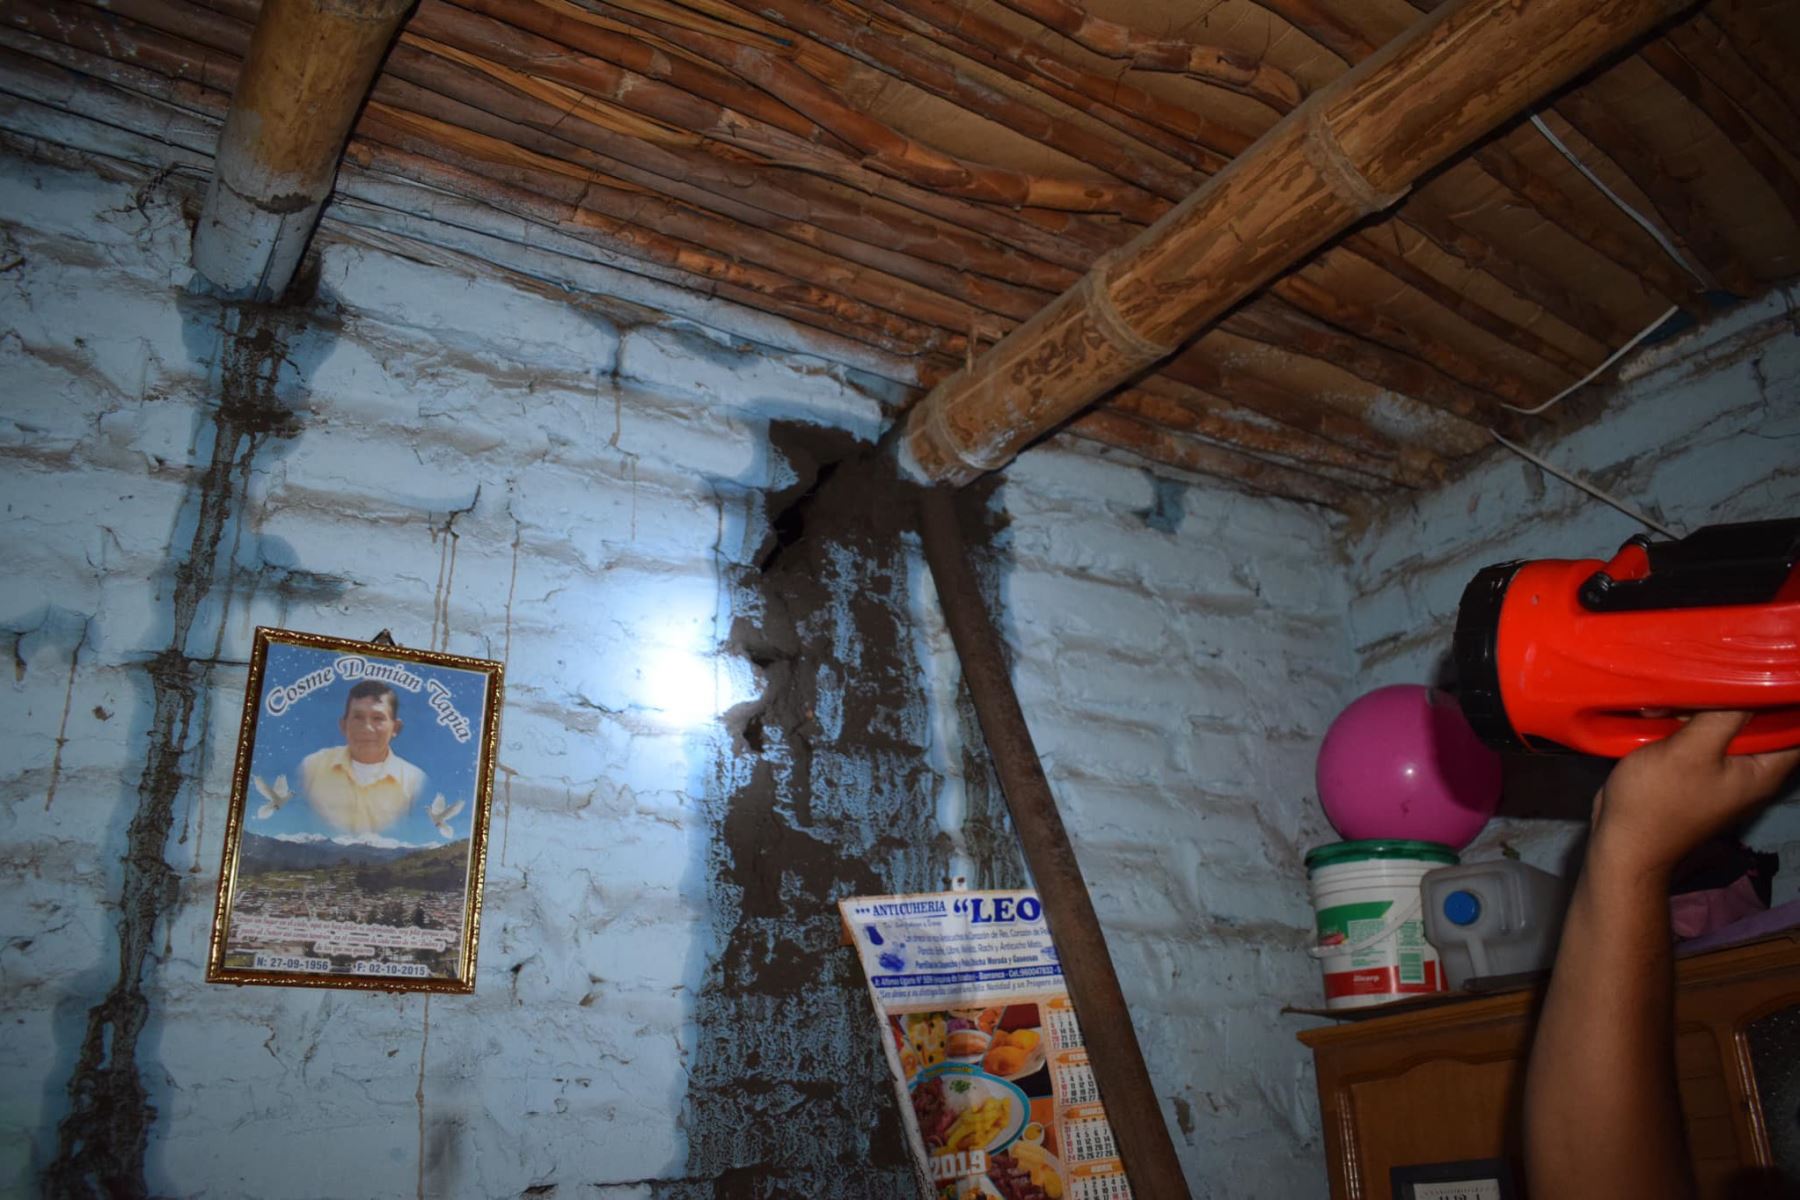 Lluvia torrencial en Barranca debilitó estructuras de al menos 1,000 viviendas